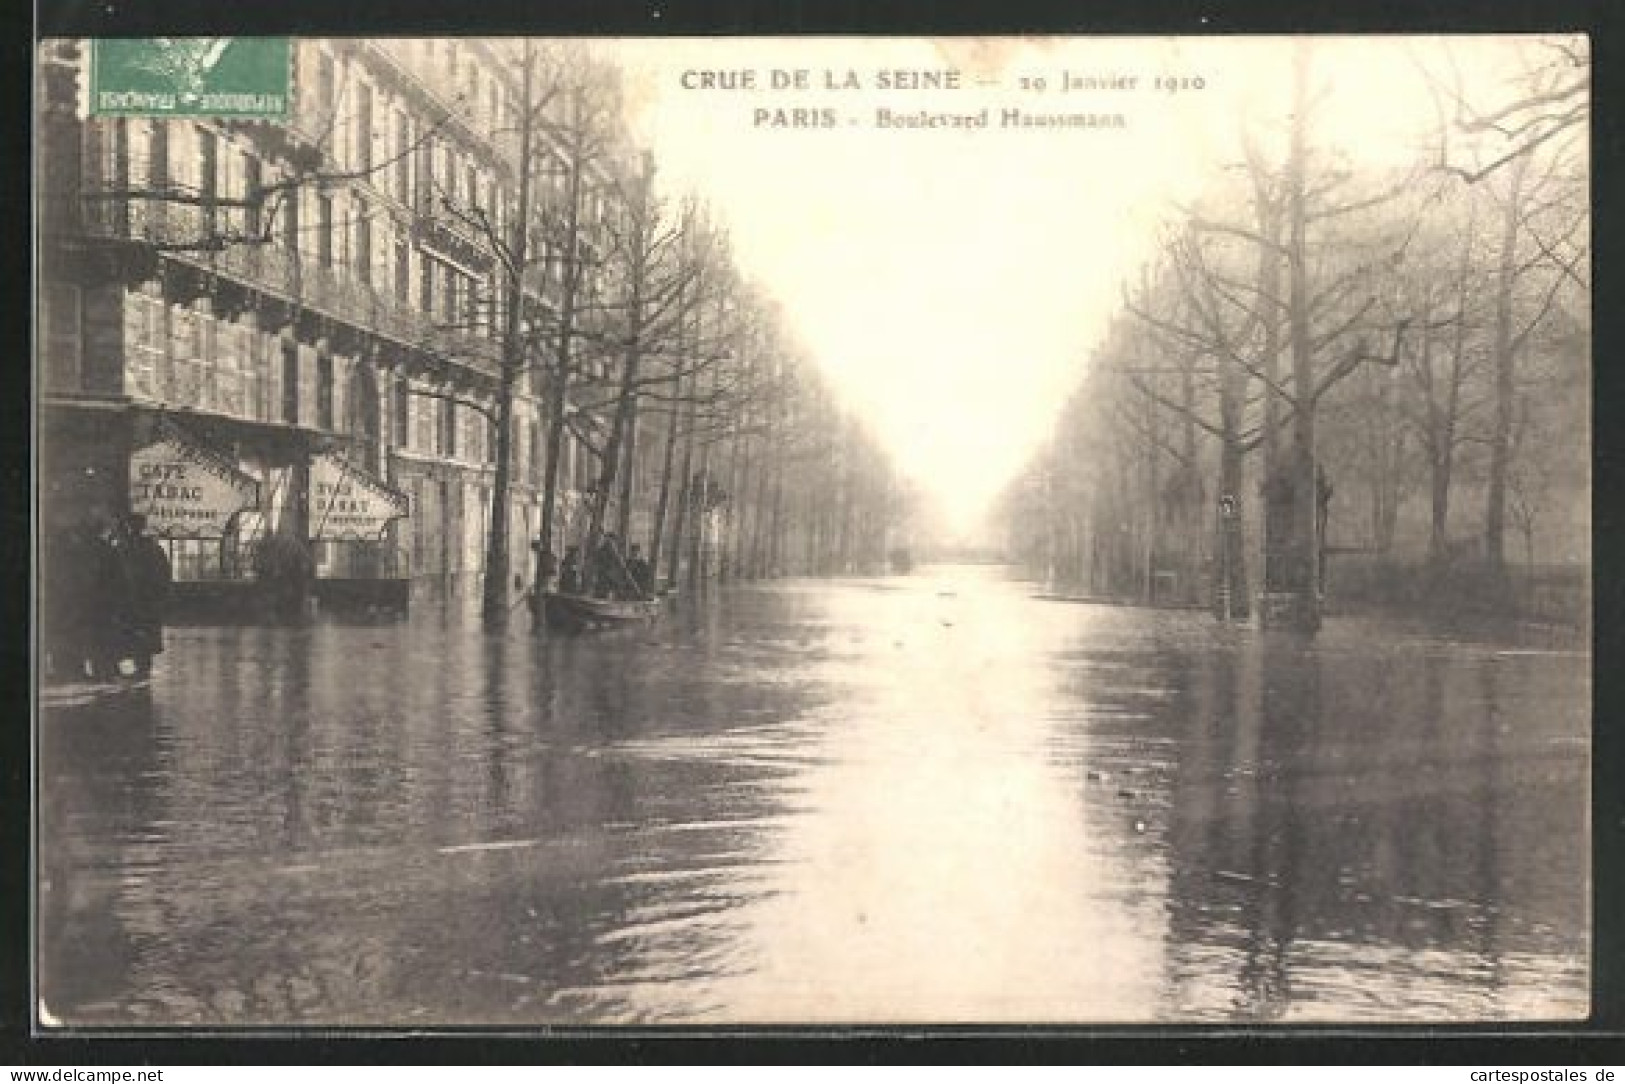 AK Crue De La Seine (29 Janvier 1910) - Paris -Boulevard Haussmann, Hochwasser  - Overstromingen